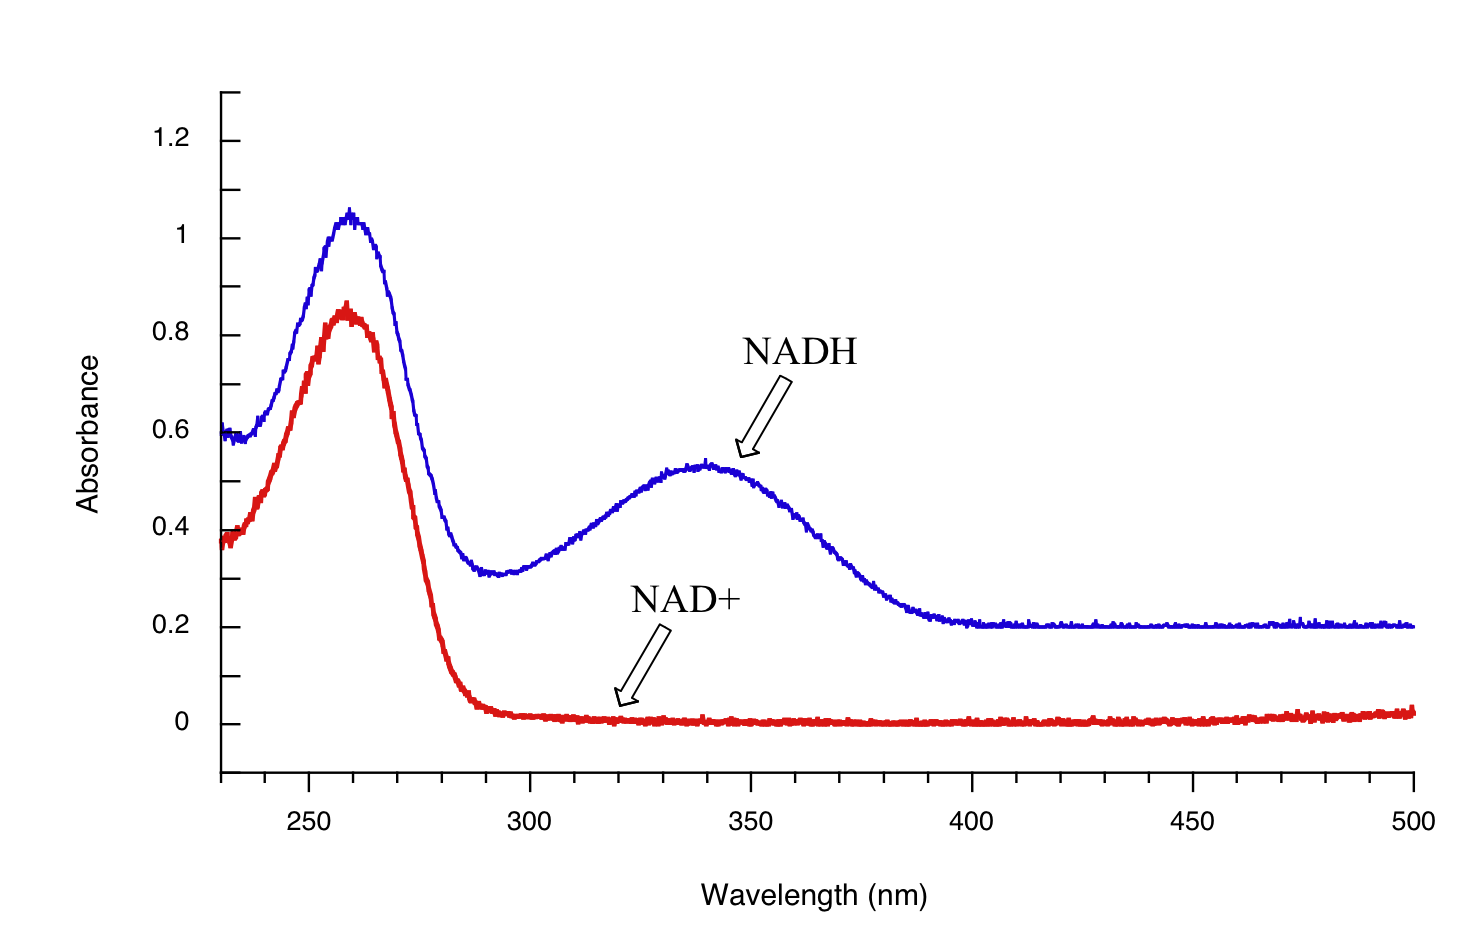 Gráfico de absorbancia vs longitud de onda comparando NADH (azul, arriba) y NAD+ (rojo, abajo). El NADH comienza con una absorbancia de 0.6 y alcanza un máximo de 1.1 alrededor de 260 nanómetros. Segundo pico alrededor de 340 nanómetros a una absorbancia de 0.7. El NAD+ comienza con una absorbancia de 0.4 y alcanza un máximo de 0.8 alrededor de 260 nanómetros. No hay segundo pico.